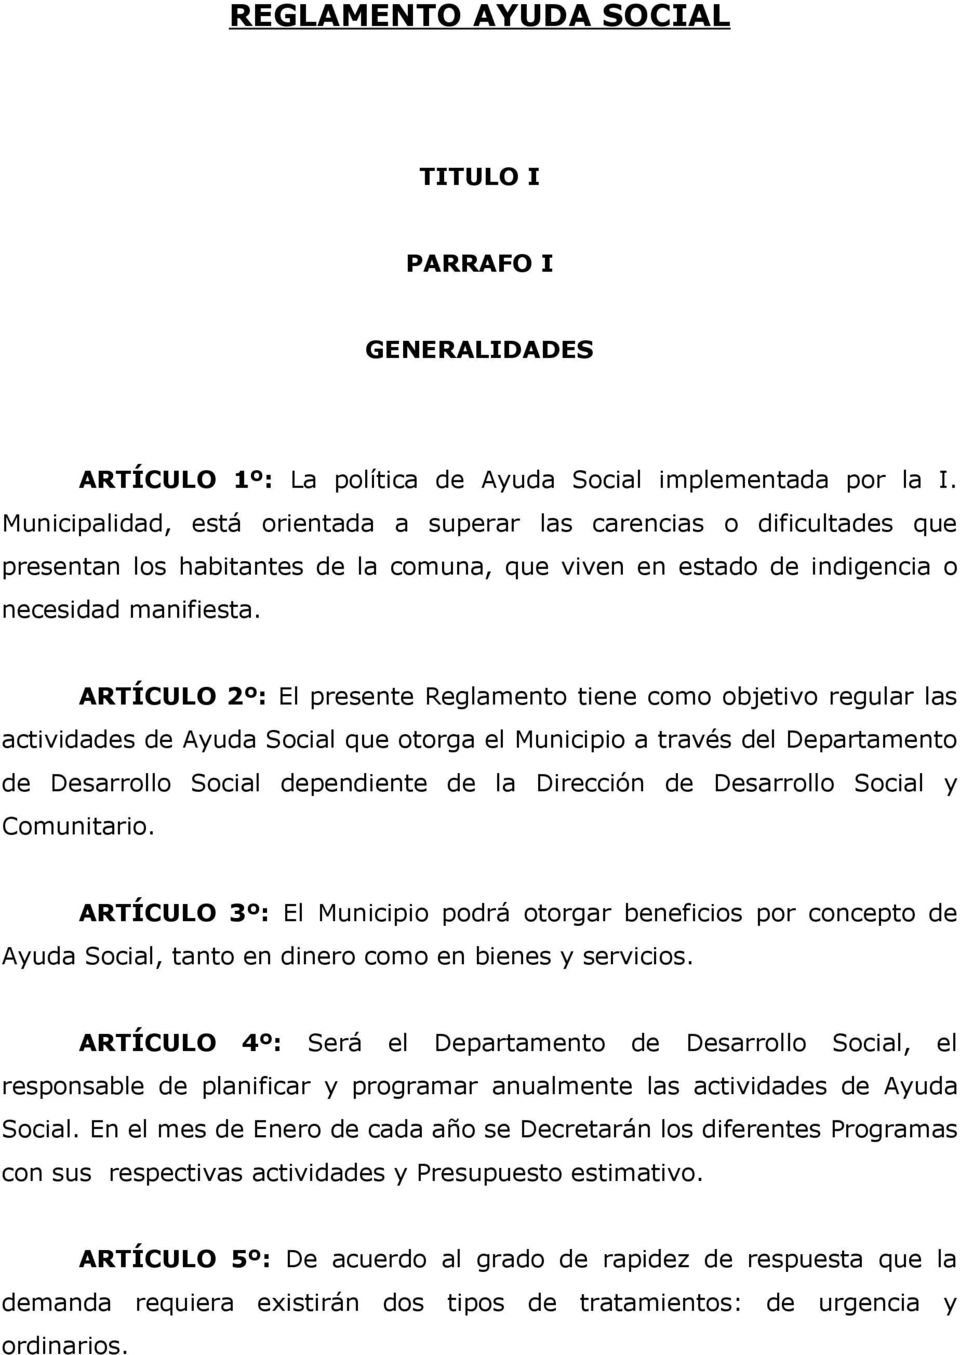 ARTÍCULO 2º: El presente Reglamento tiene como objetivo regular las actividades de Ayuda Social que otorga el Municipio a través del Departamento de Desarrollo Social dependiente de la Dirección de